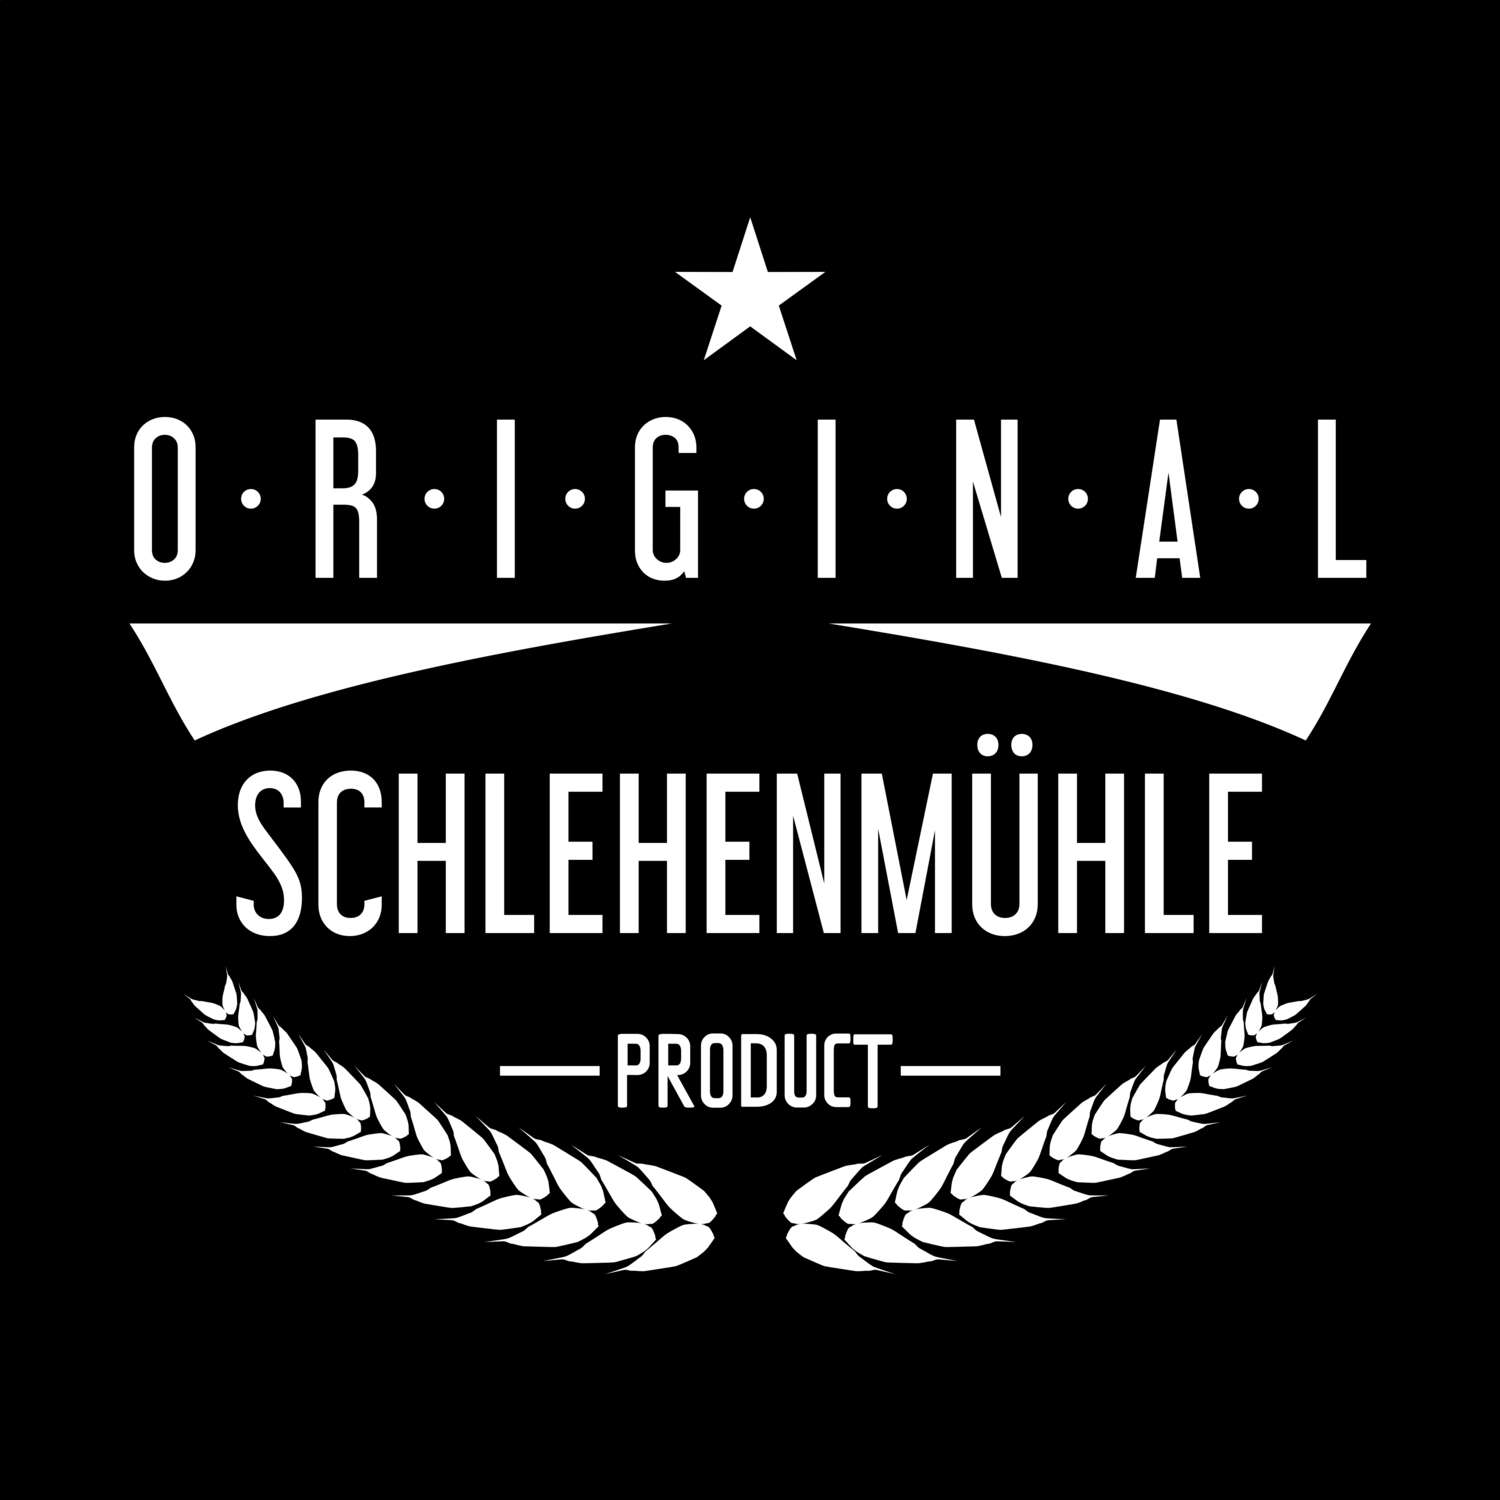 Schlehenmühle T-Shirt »Original Product«